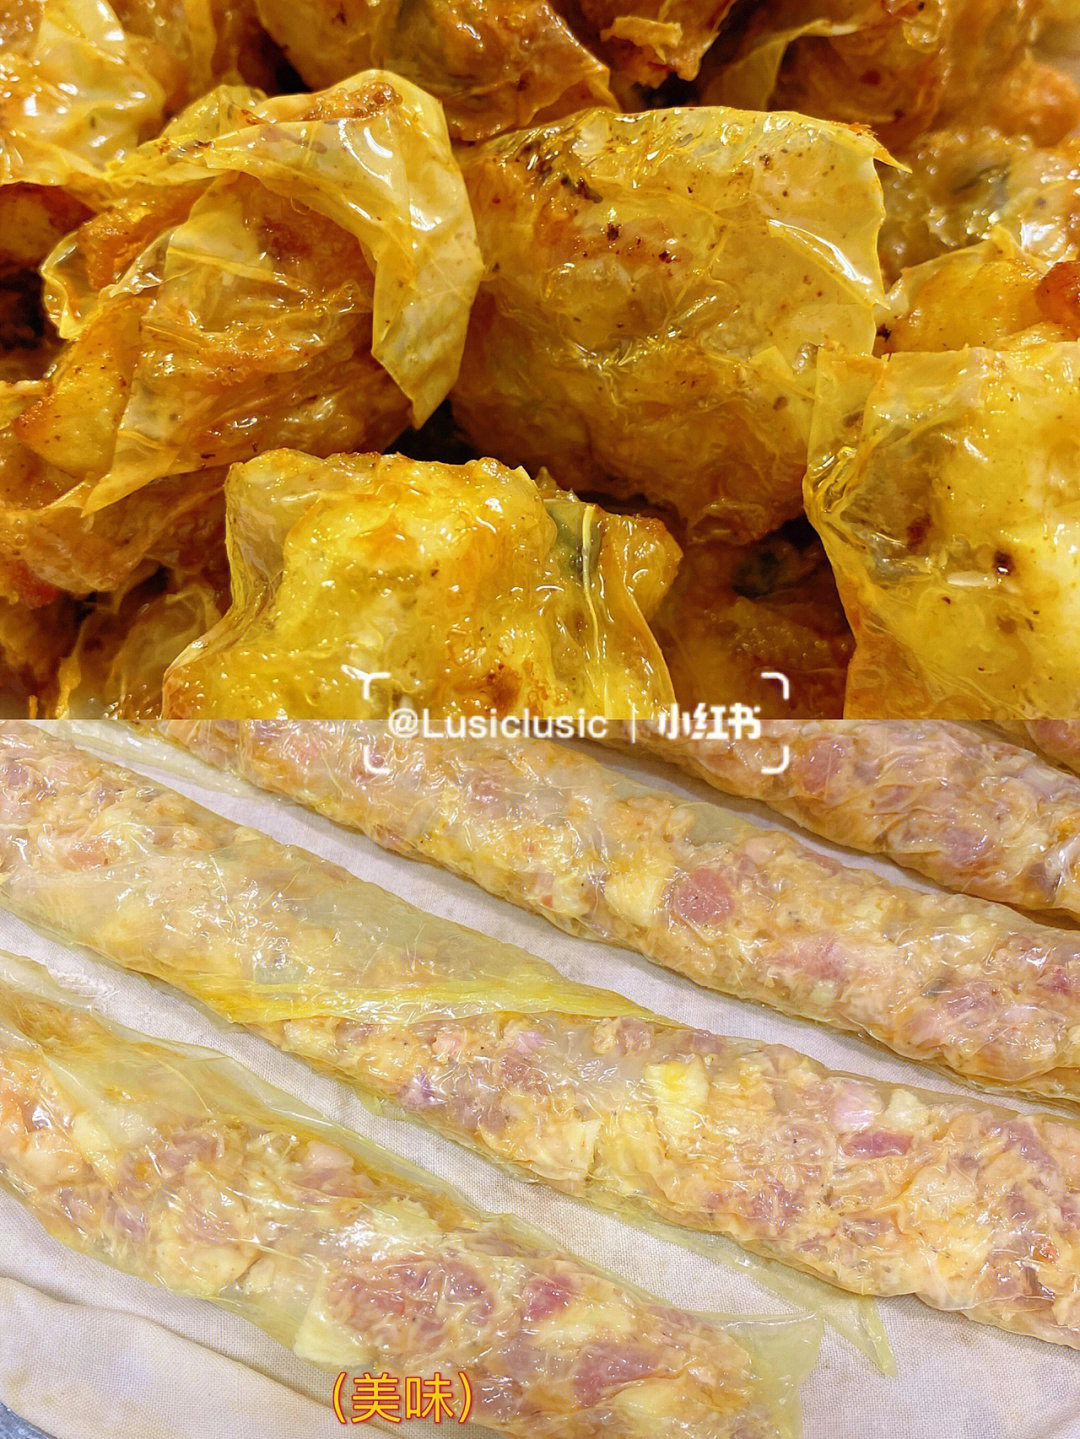 潮汕粿肉肉卷福建五香传统特色小吃自制